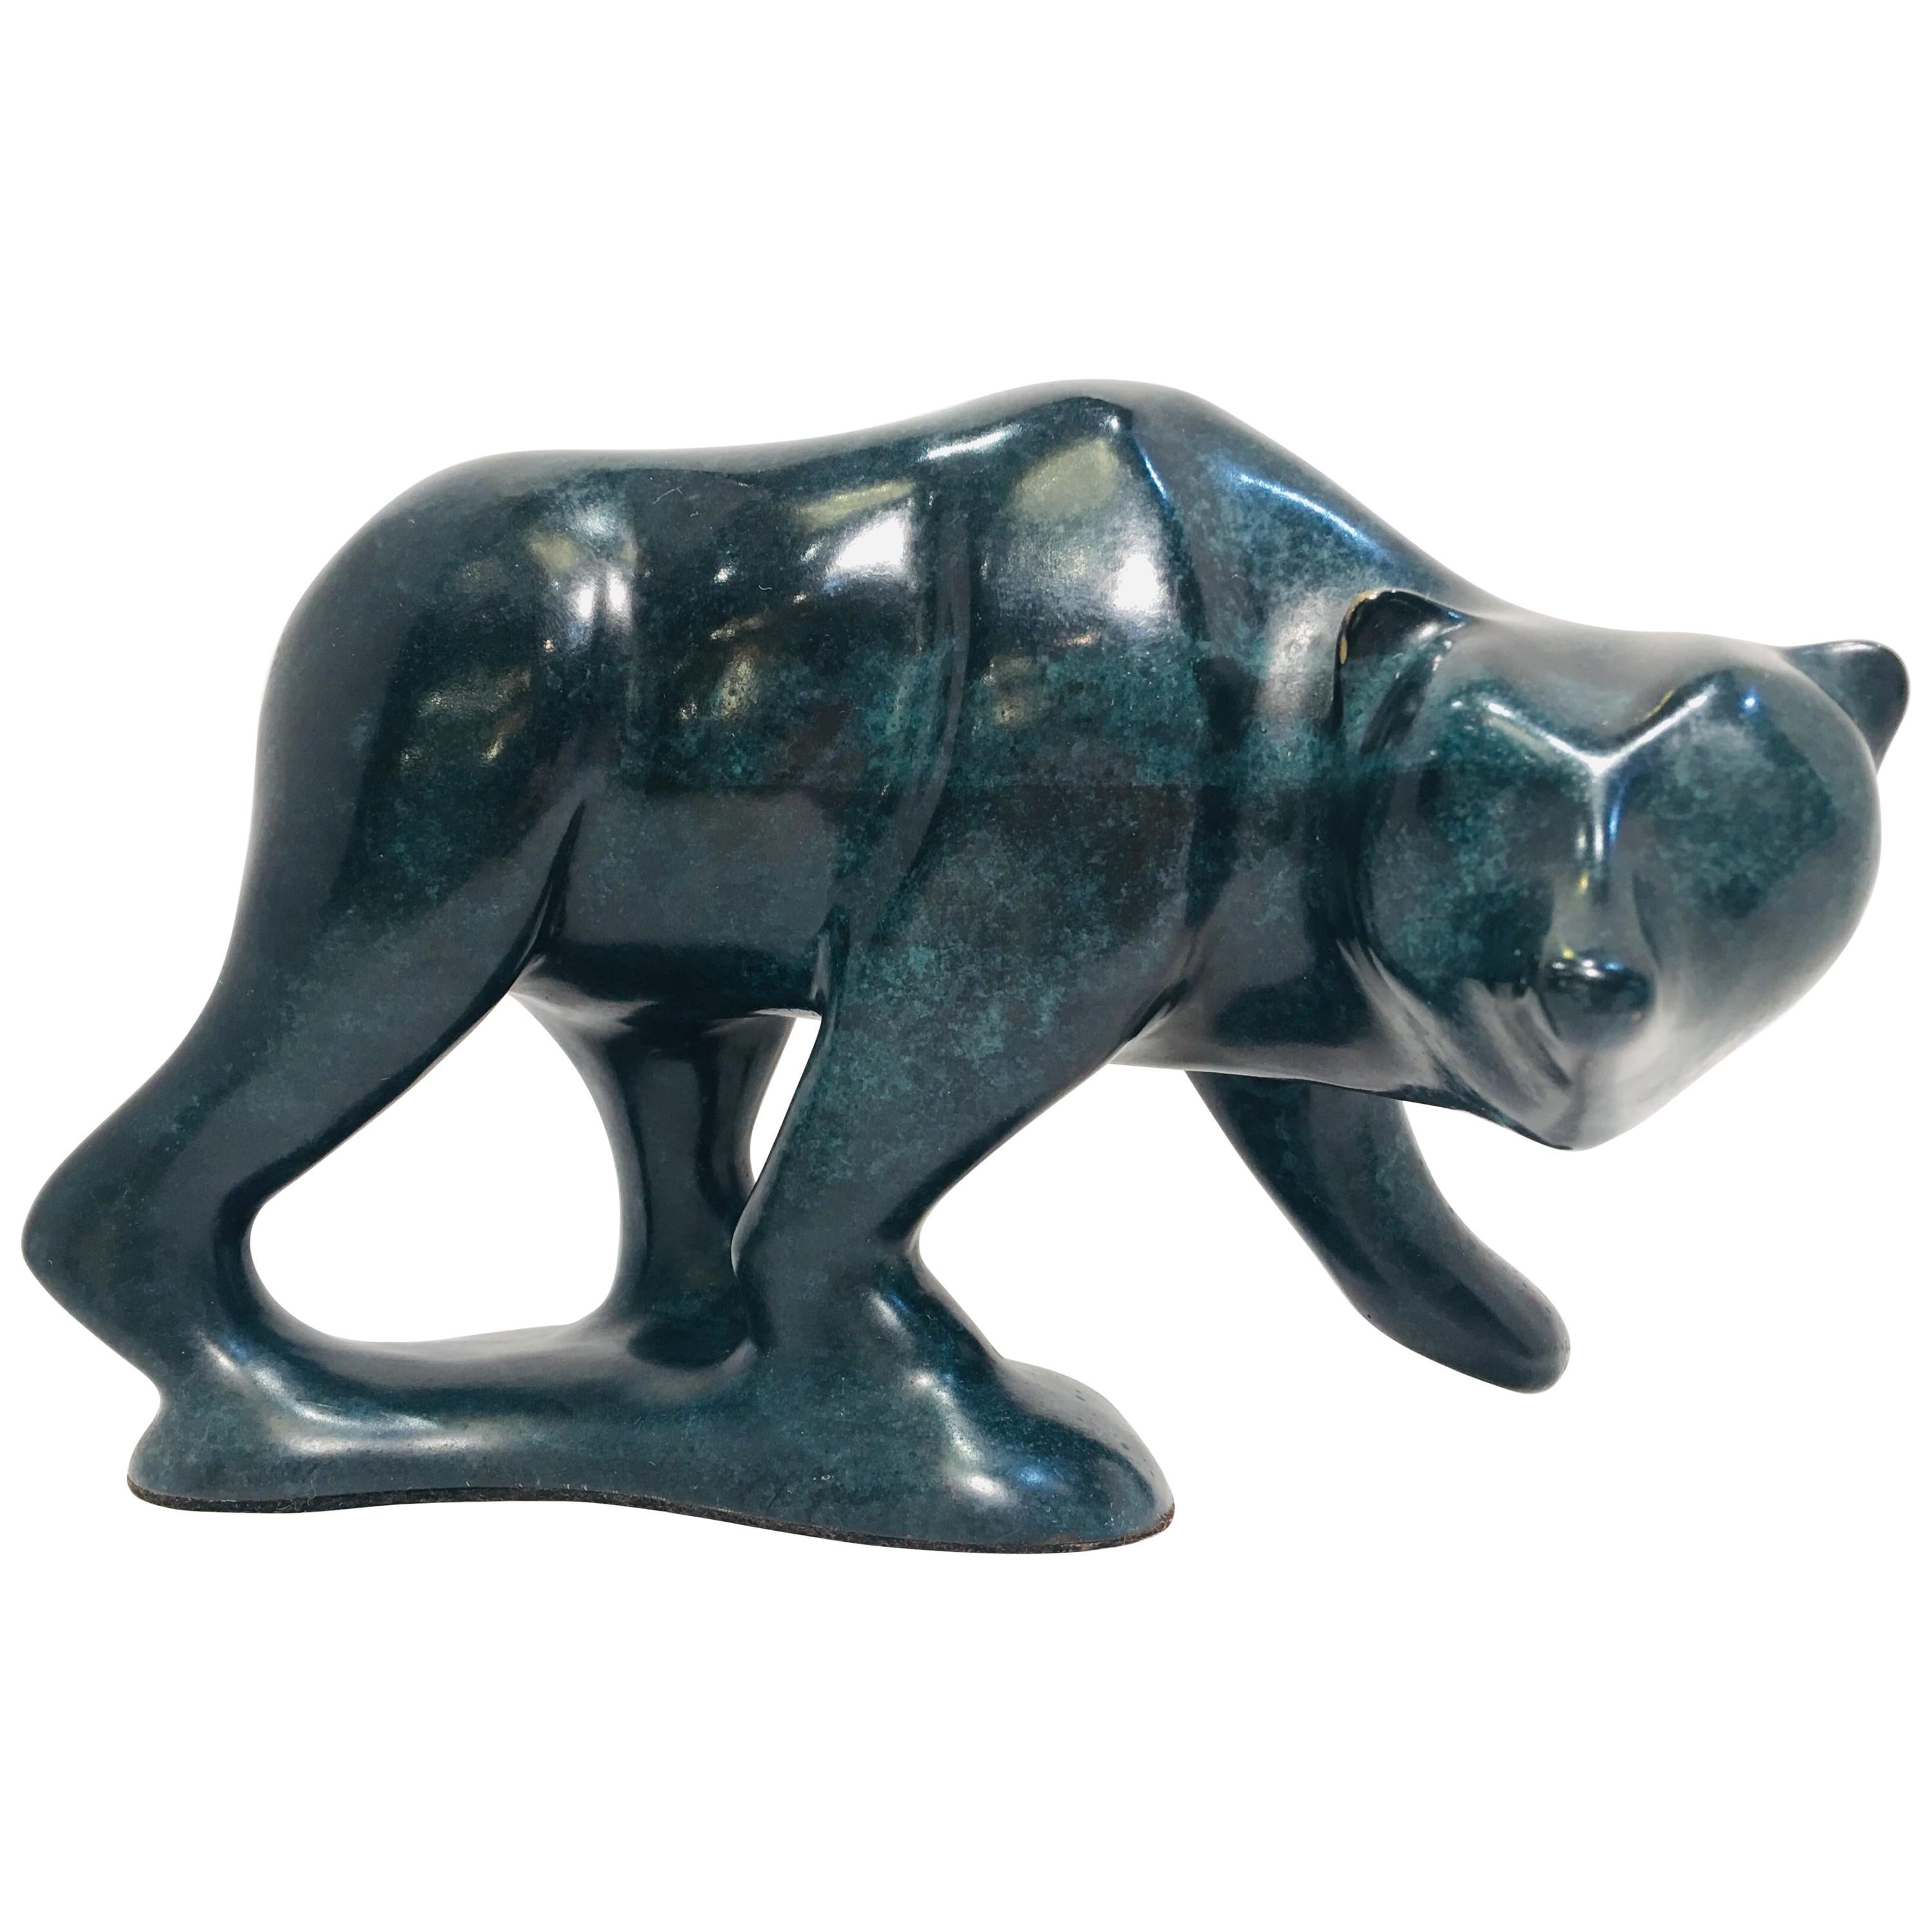 Original Robert Deurloo Limited Edition Bronze Bear "Old Silvertip" Sculpture